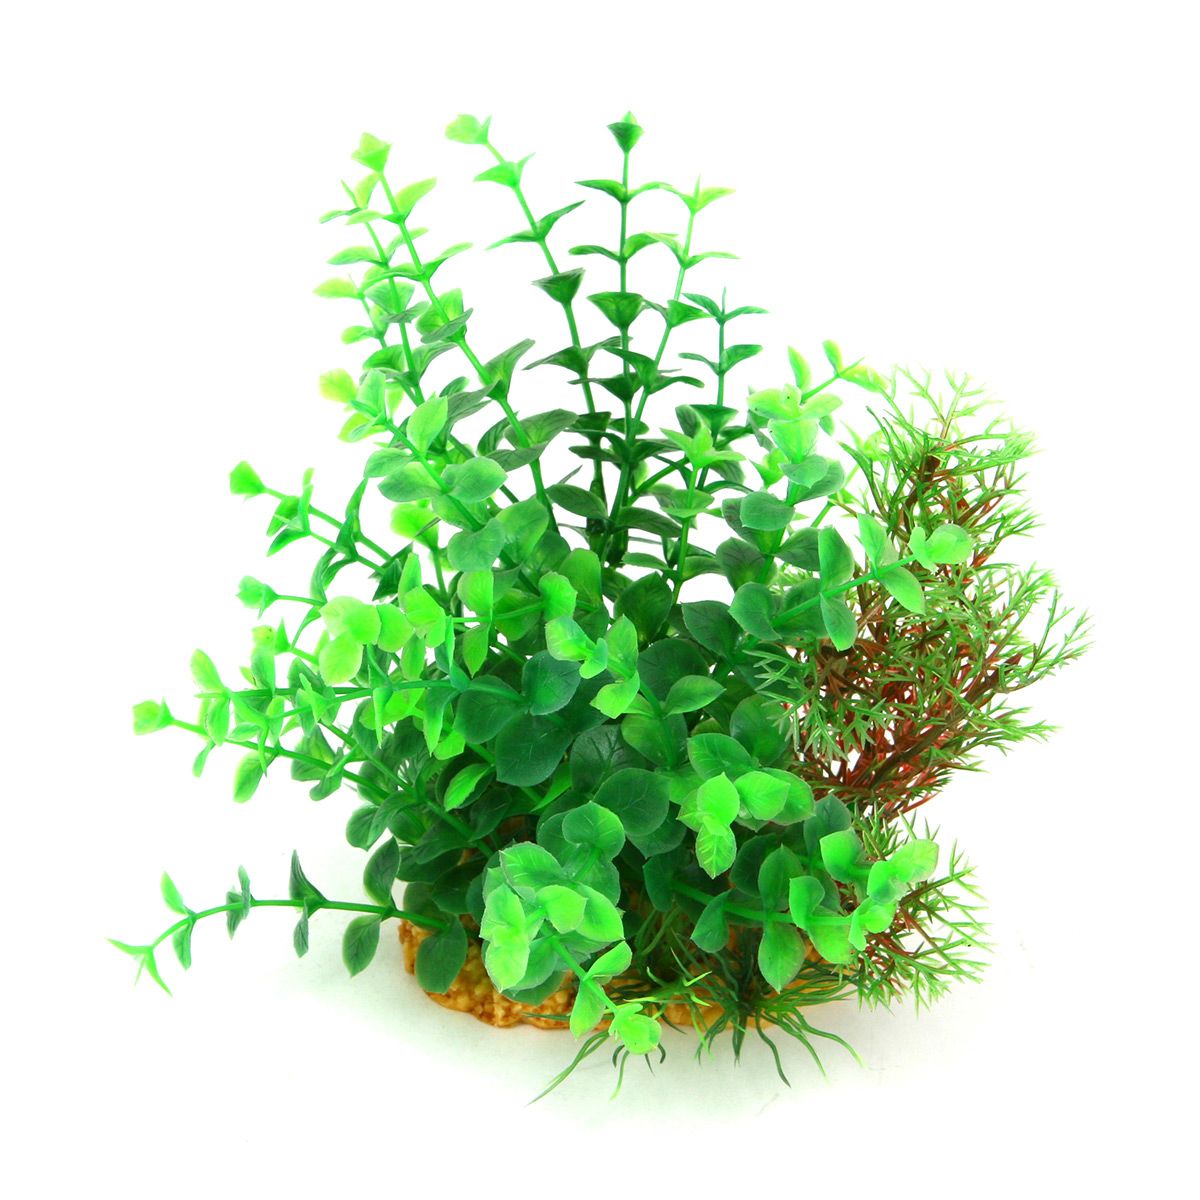 Растение микс. Искусственное растение ARTUNIQ Людвигия 35 см. Плант микс цветок. Грин микс растение. Зеленый микс цветок.